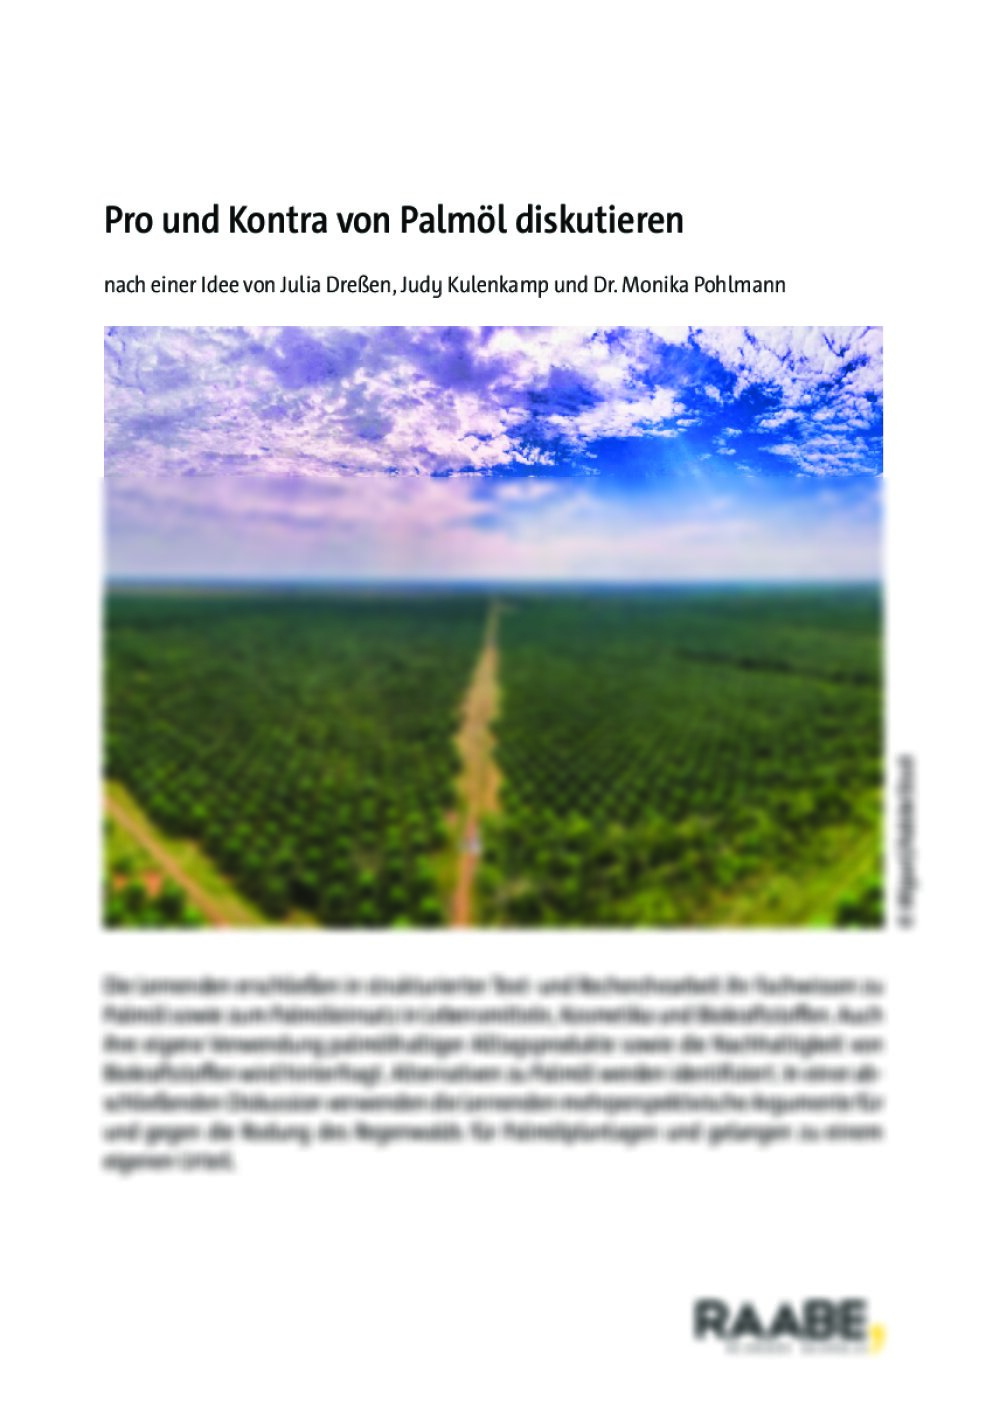 Pro und Kontra von Palmöl diskutieren - Seite 1